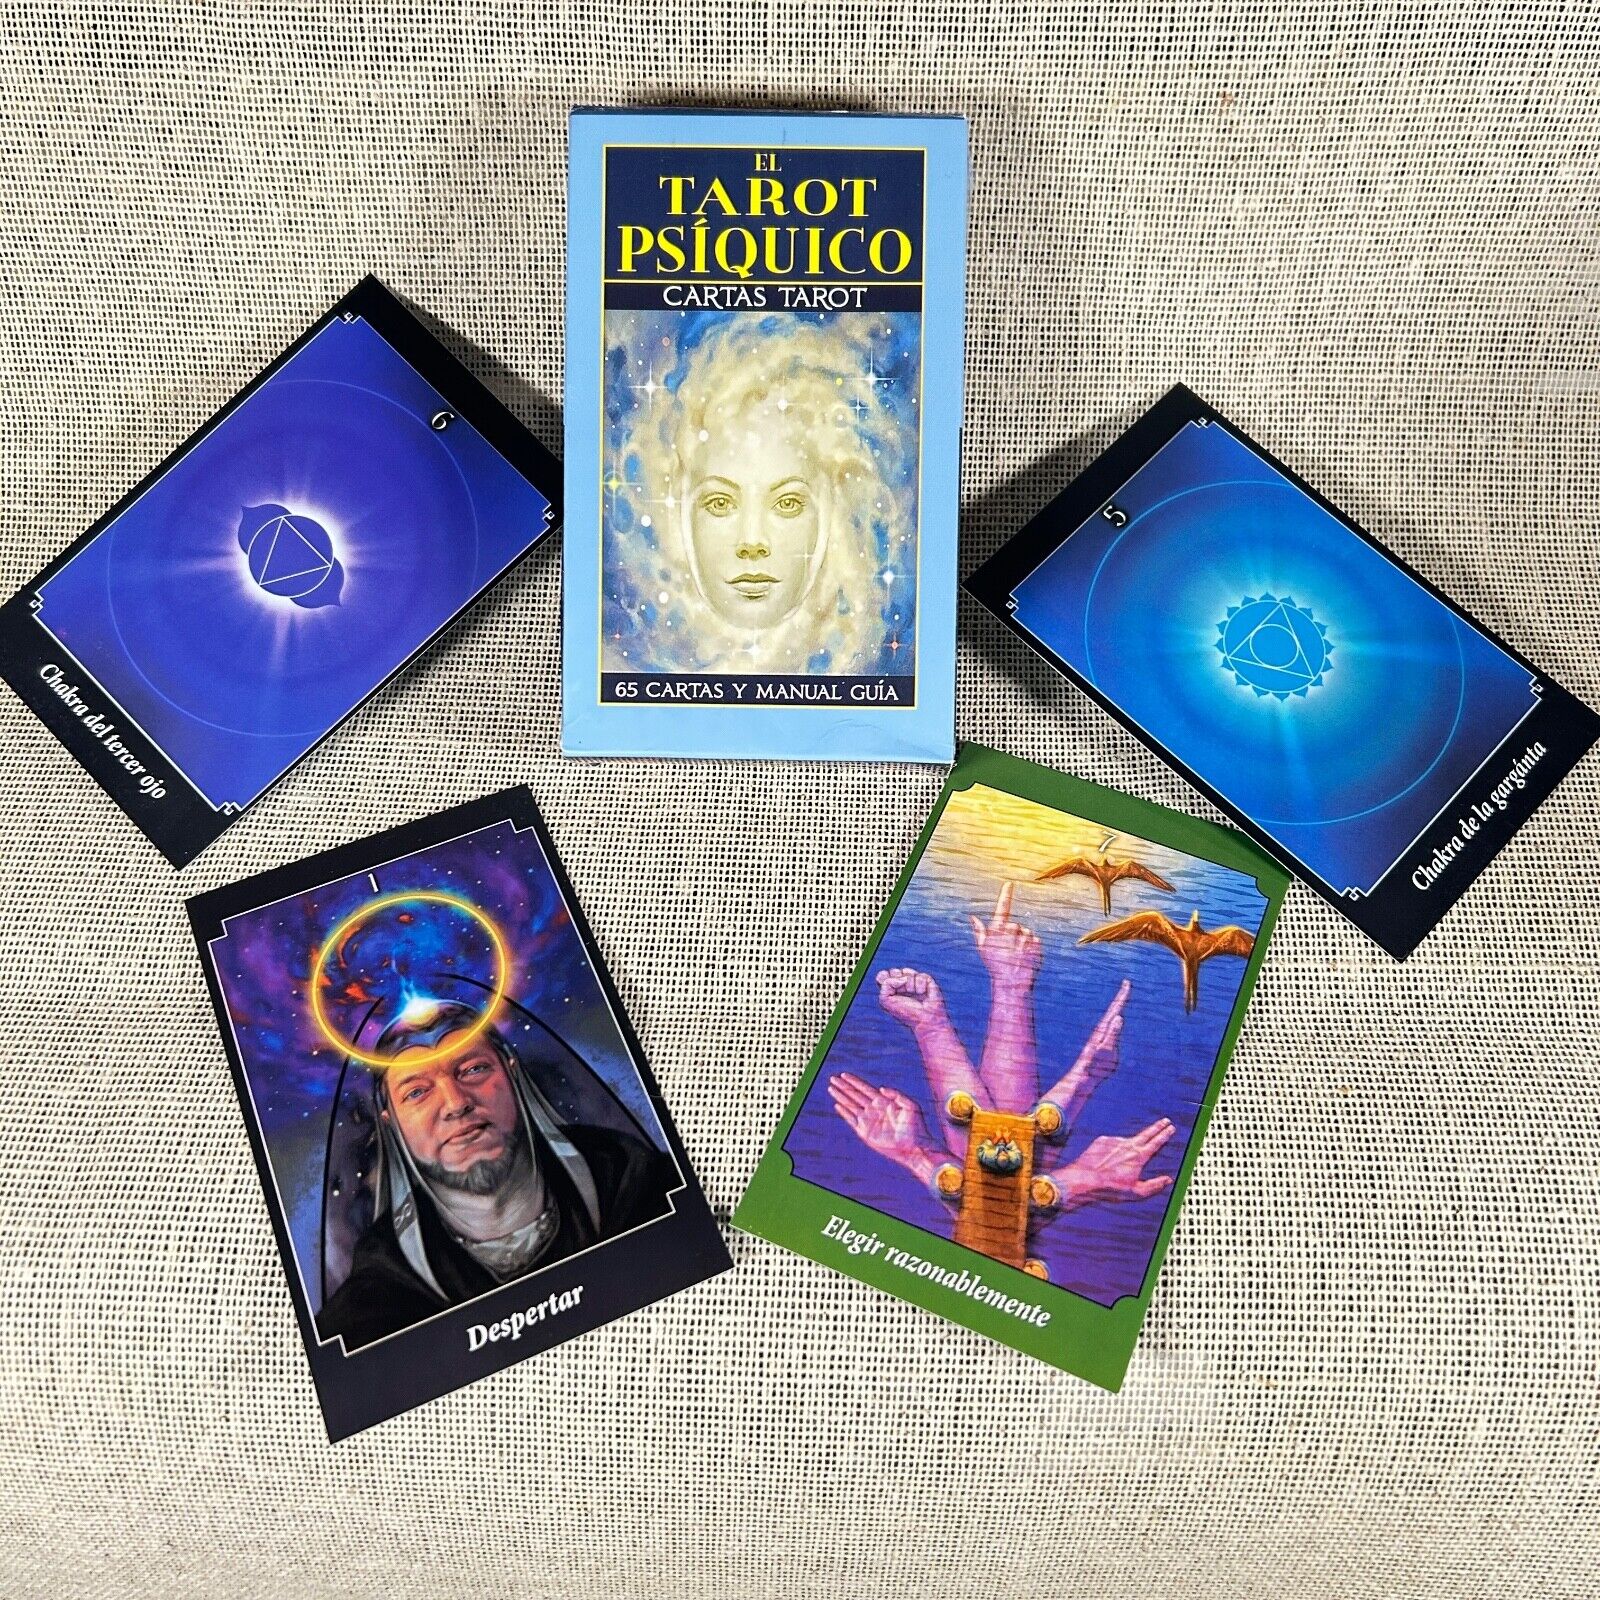 El Tarot Psiquico - Cartas Oráculo - Edición en español - 65 cartas del tarot